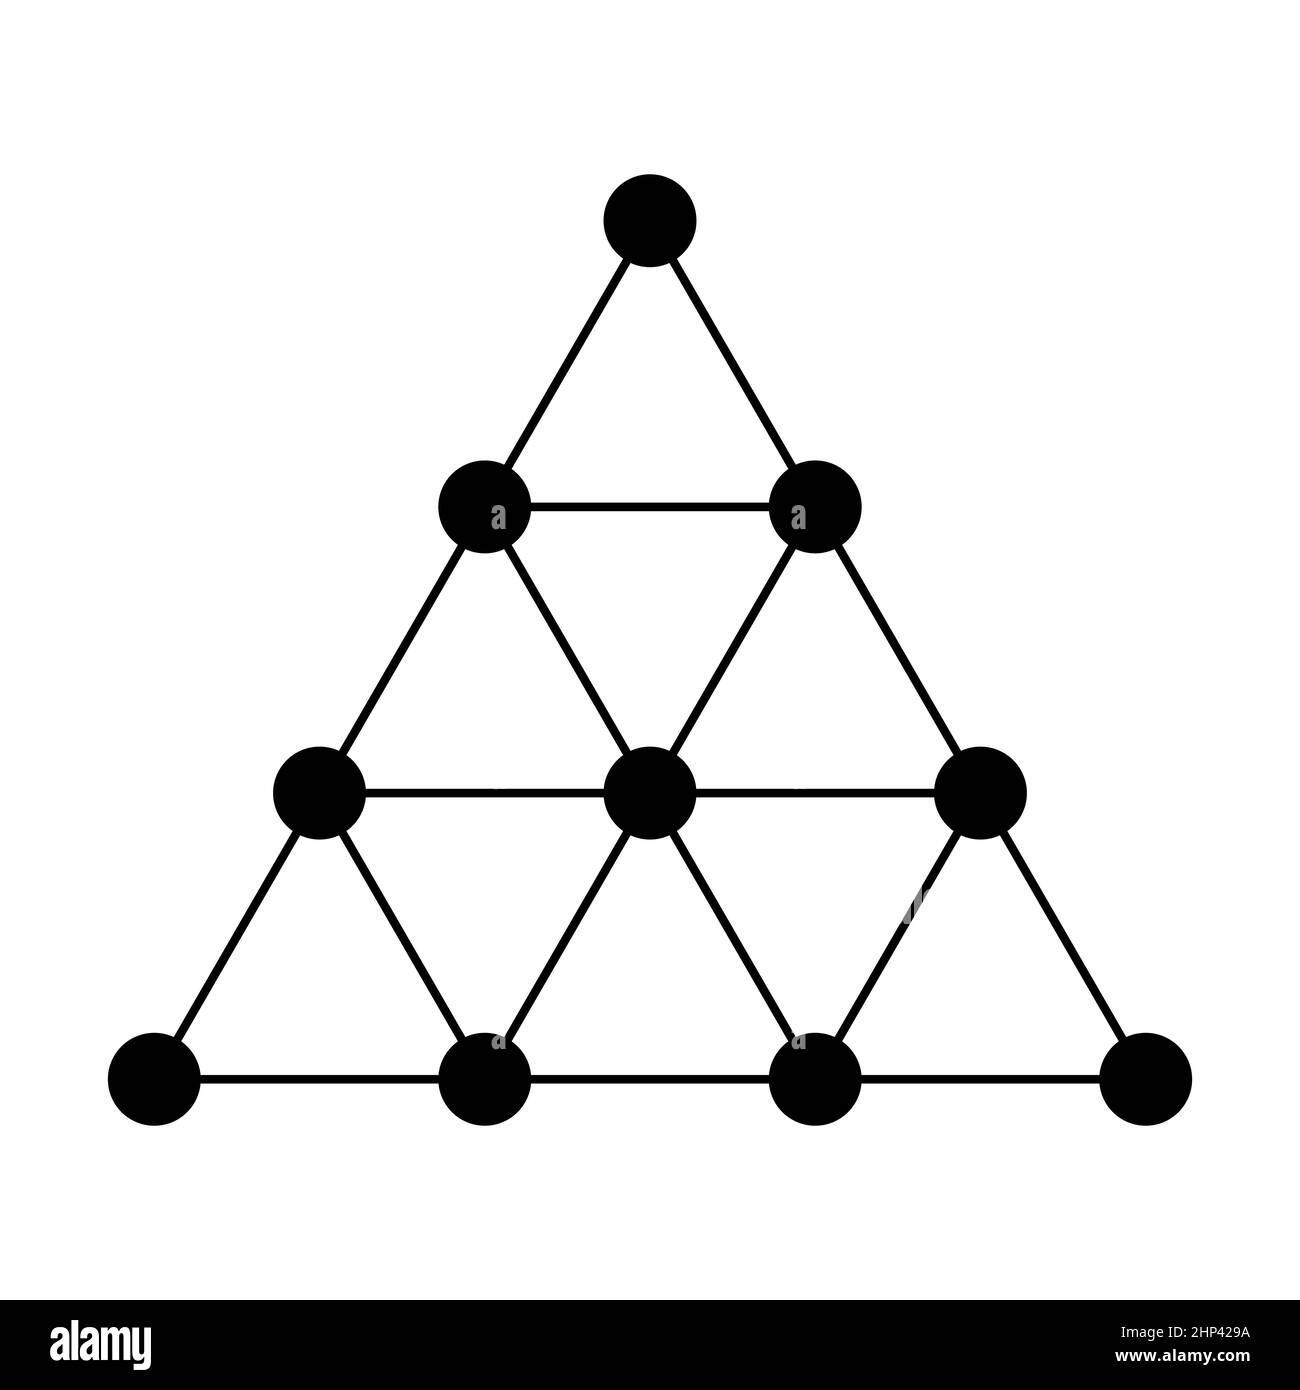 Tetractie, o tetrad, o tetractie del decad. Una figura triangolare, costituita da dieci punti, disposta su quattro file. Foto Stock